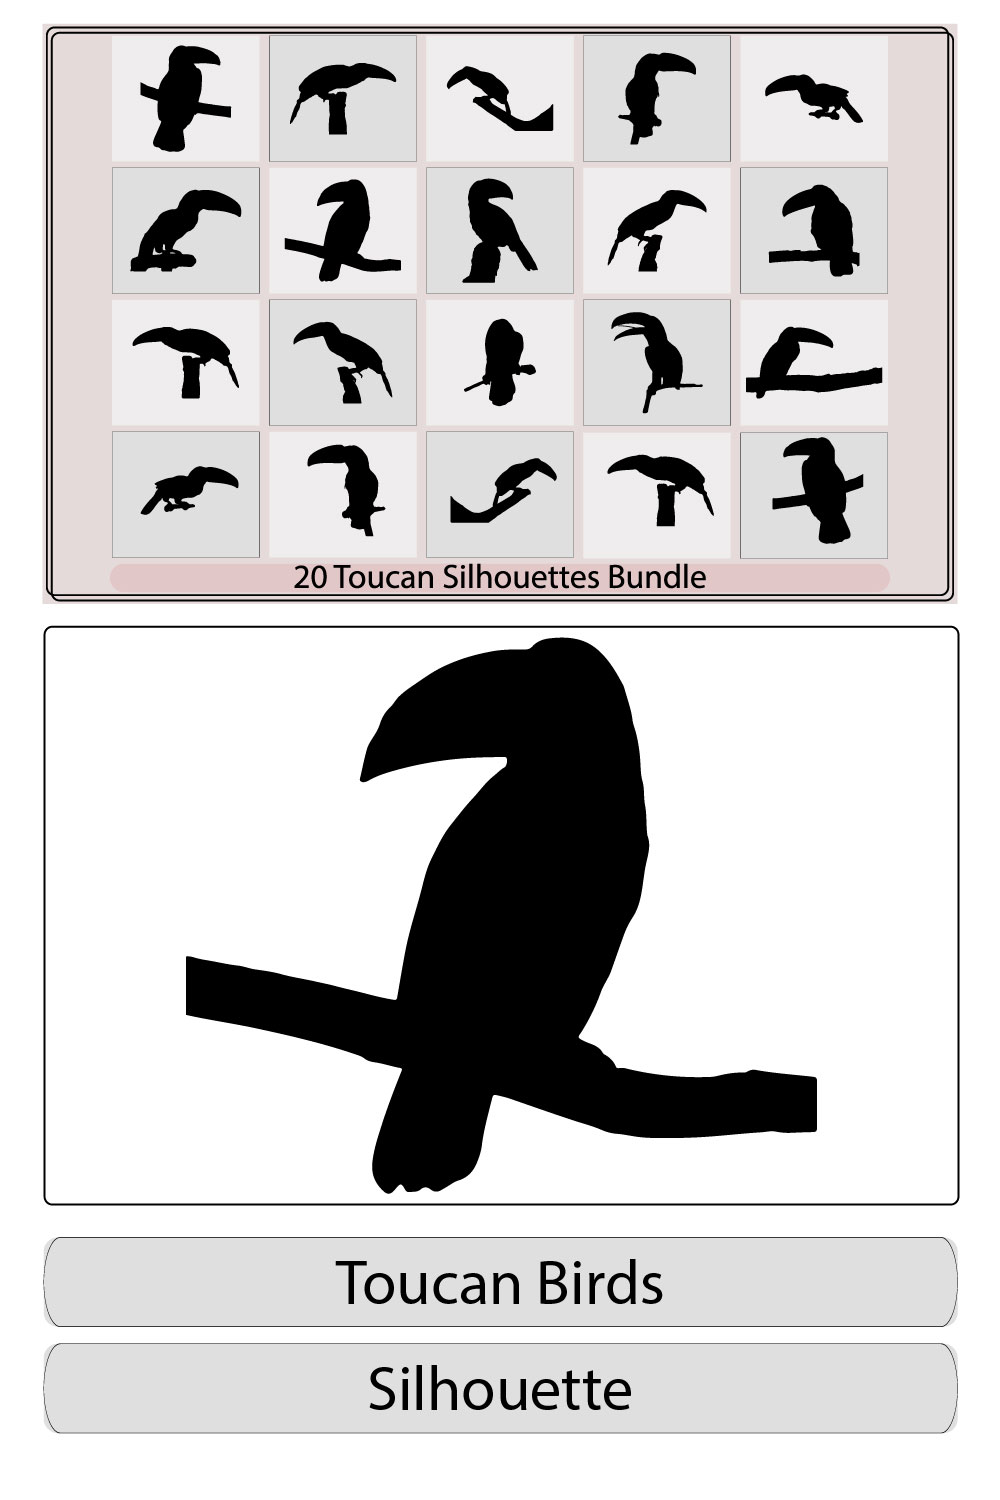 Toucan silhouette,toucan bird black silhouette logo icon design vector illustration,Vector illustration of a black silhouette toucan pinterest preview image.